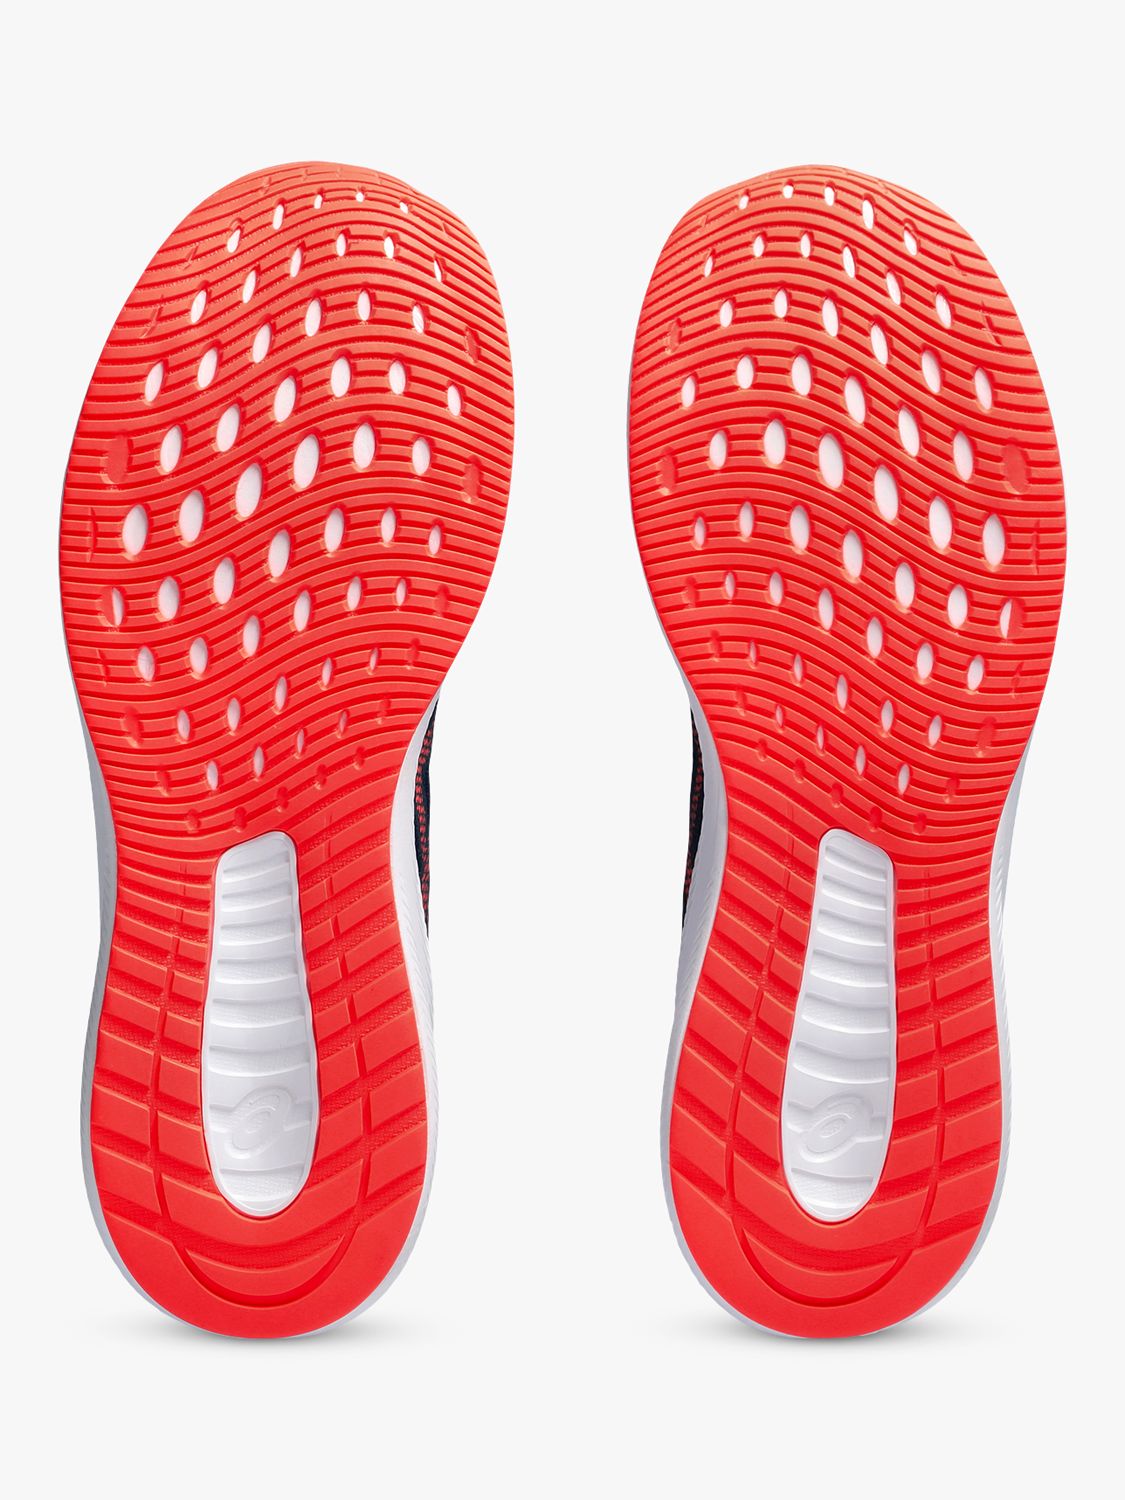 ASICS PATRIOT 13 Men's Running Shoes, Blue/Sunrise Red, 7.5